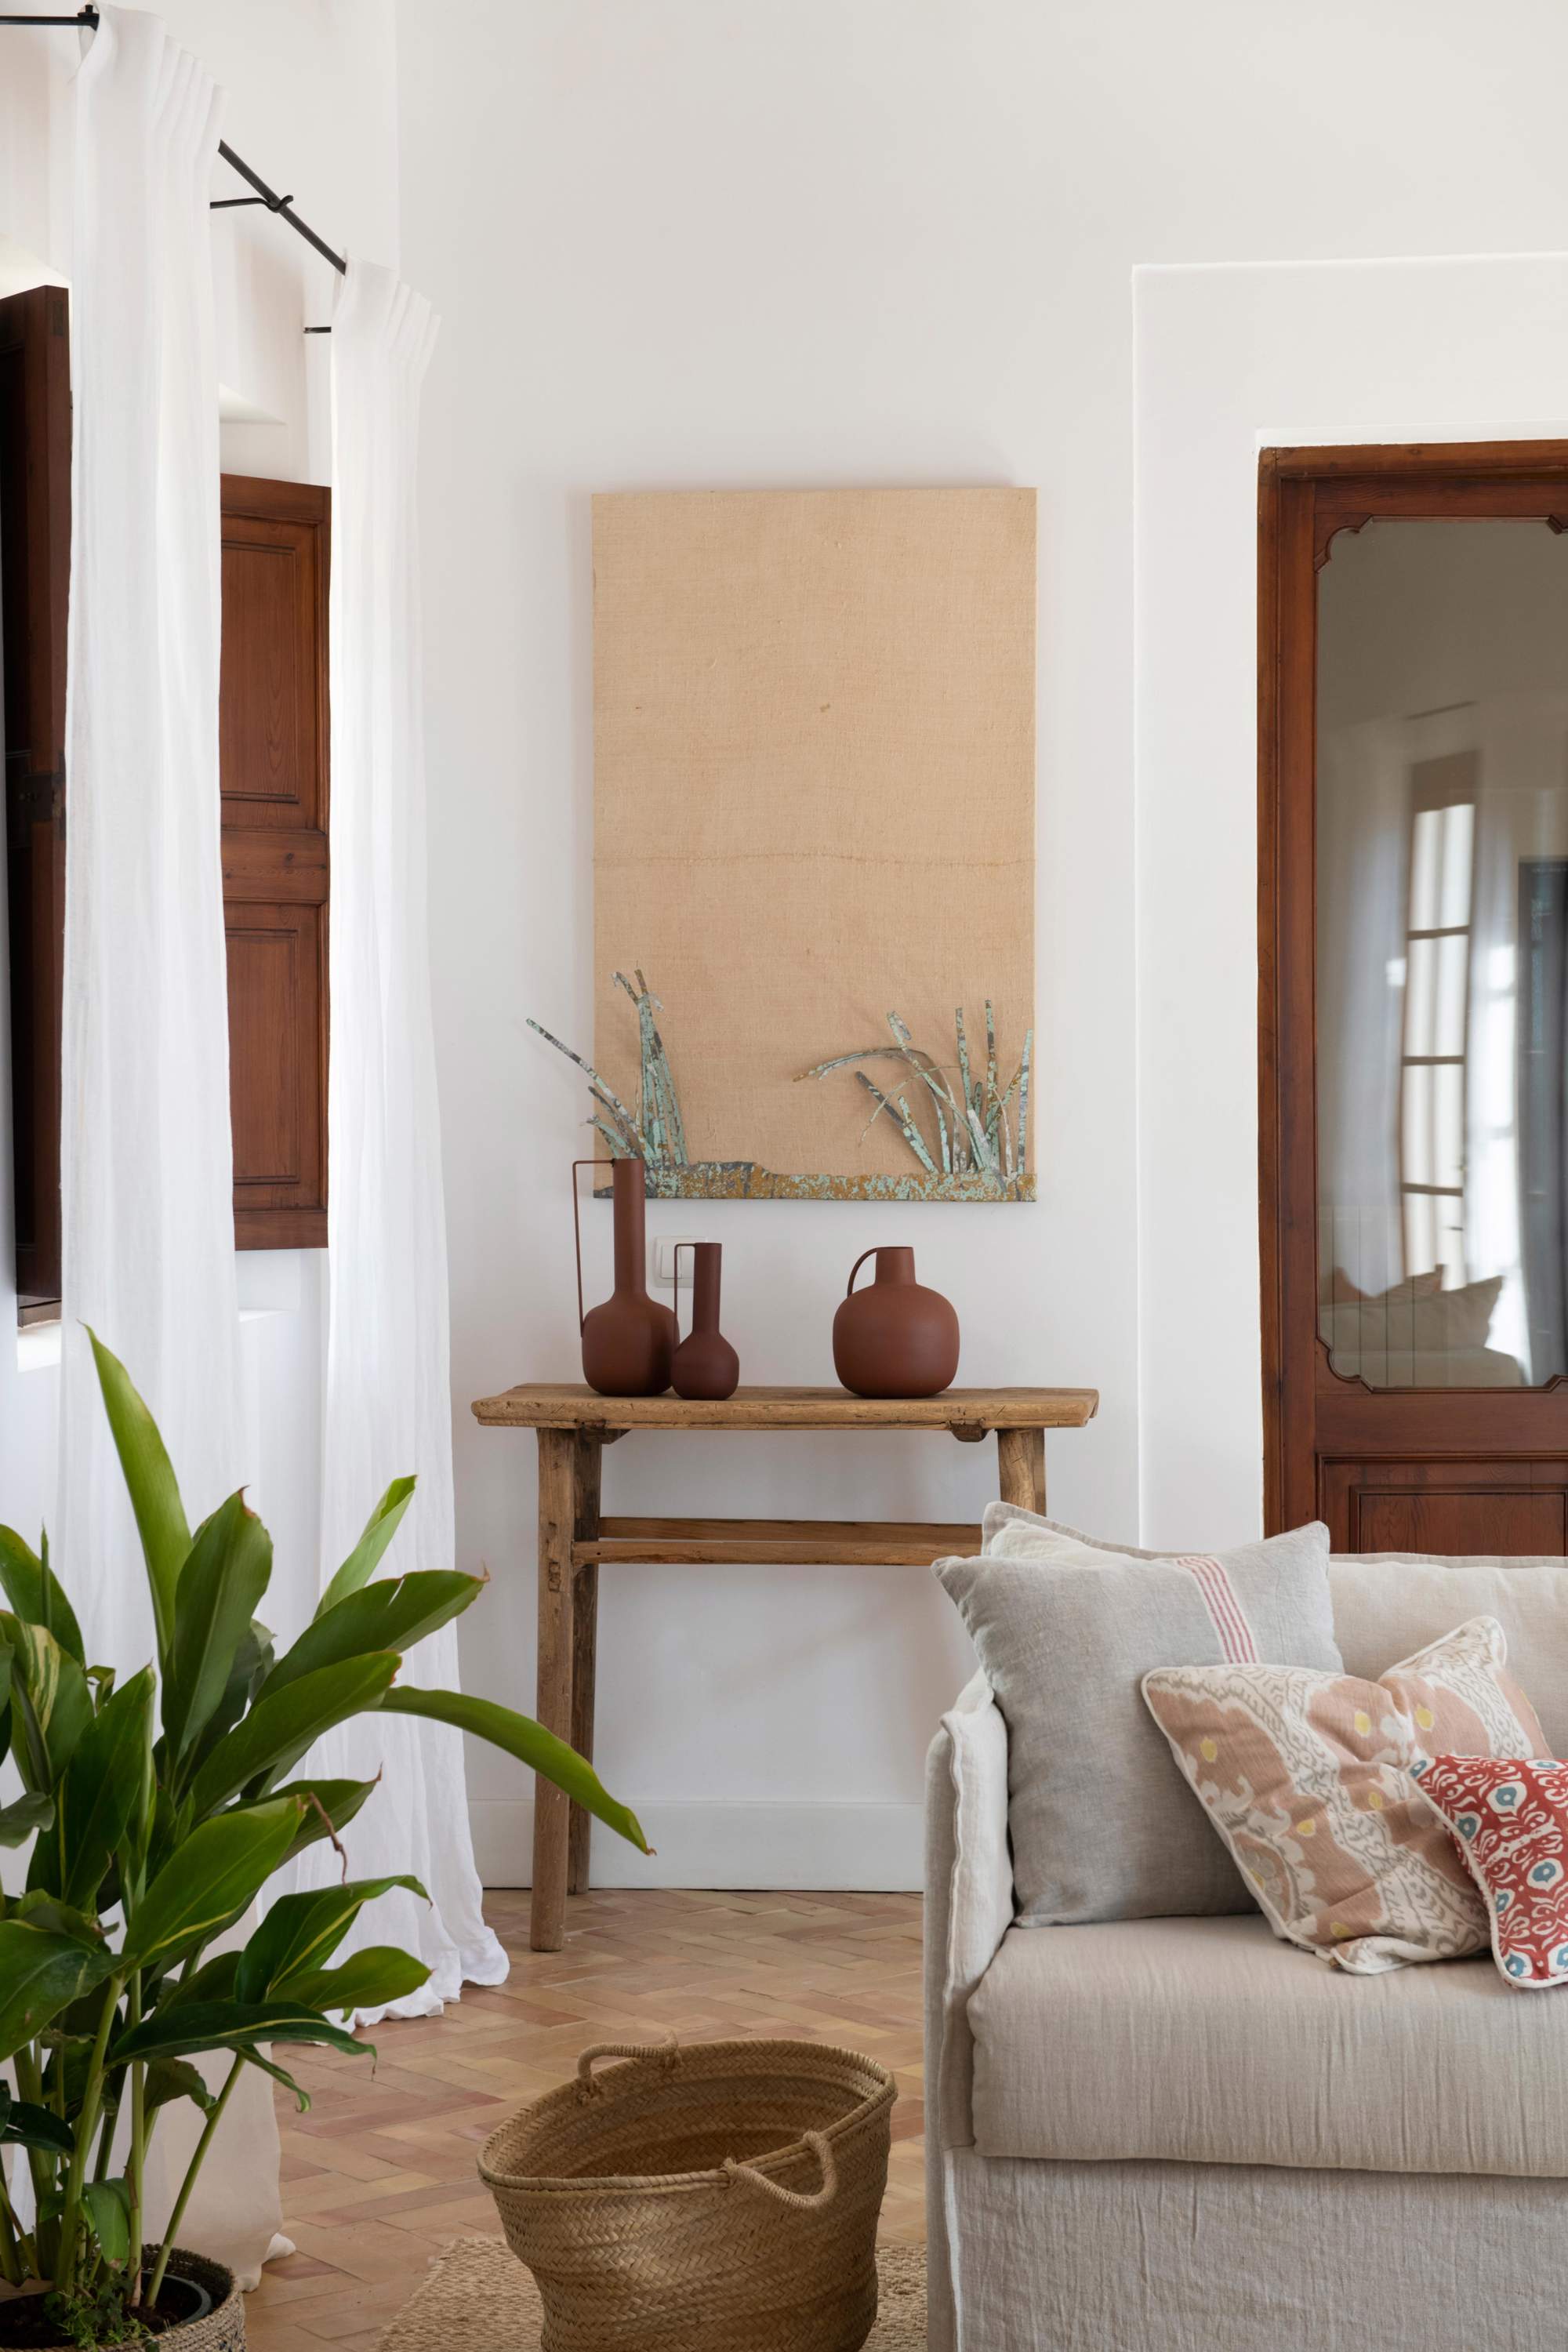 Salón con consola de madera detrás del sofá, cesta, cuadro y jarrones de cerámica